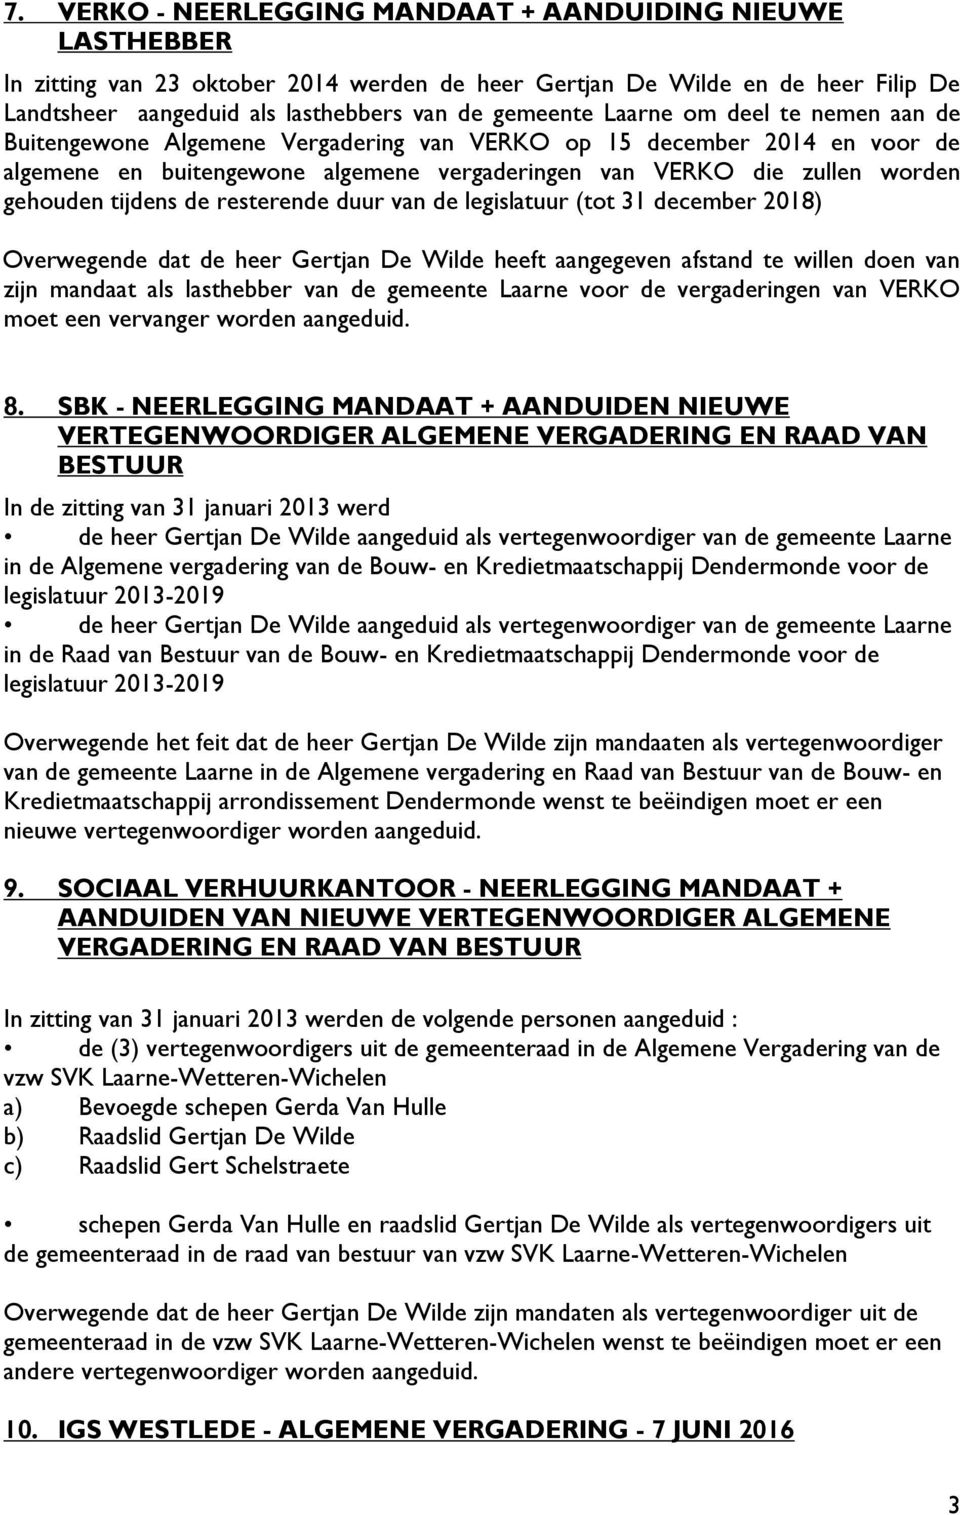 de resterende duur van de legislatuur (tot 31 december 2018) Overwegende dat de heer Gertjan De Wilde heeft aangegeven afstand te willen doen van zijn mandaat als lasthebber van de gemeente Laarne